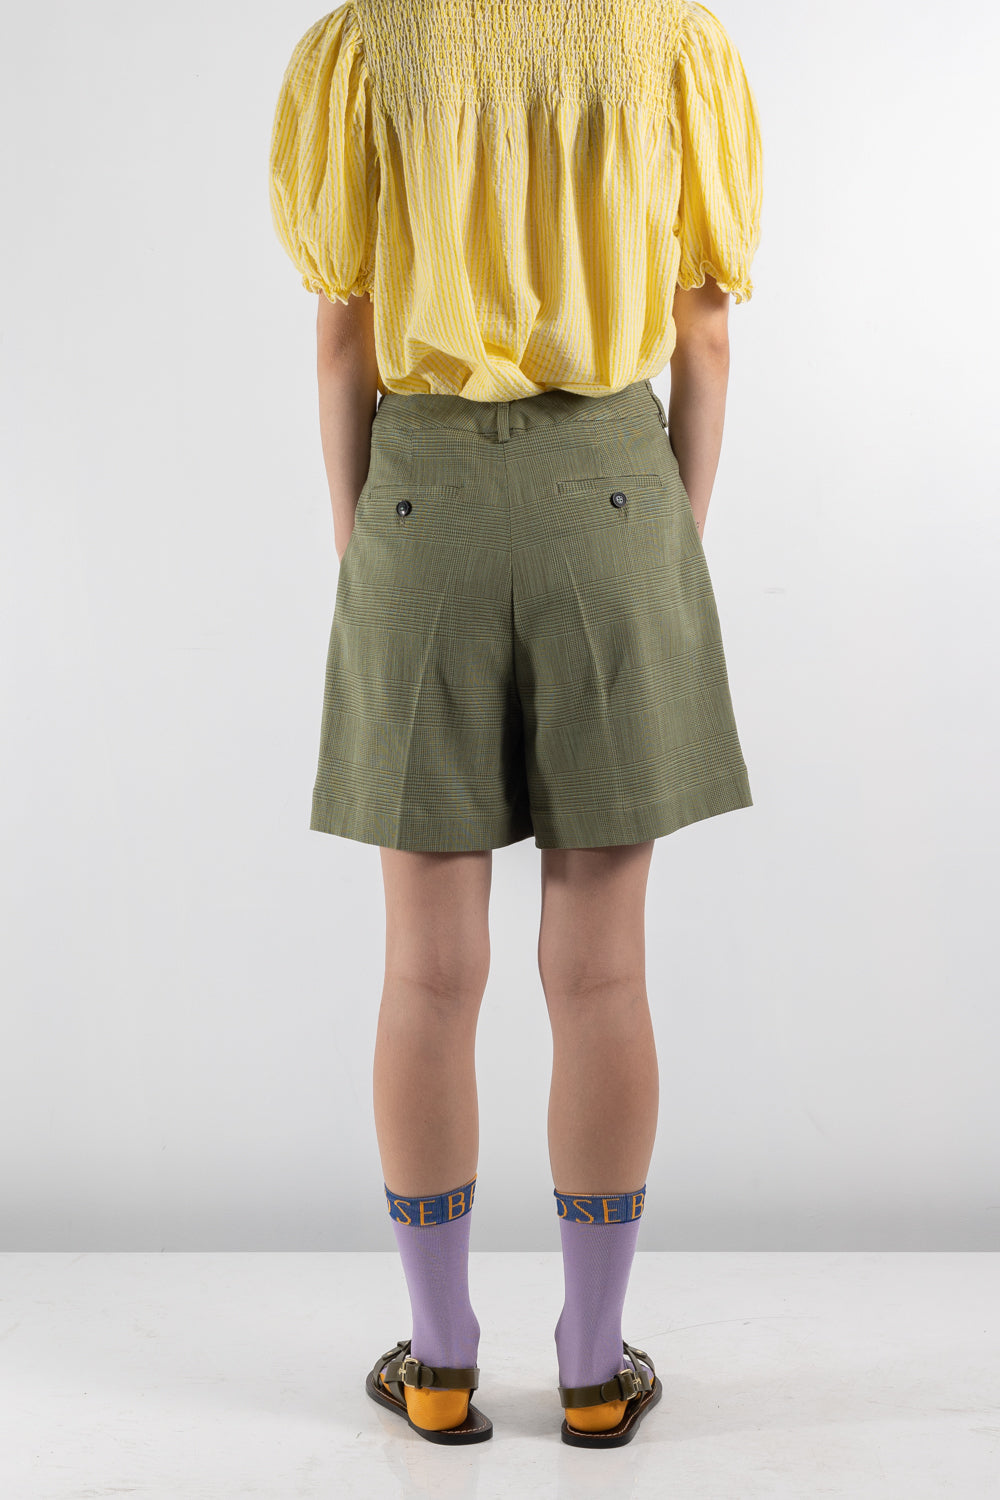 Womens Short | Bellerose Volkertje shorts | The Standard Store